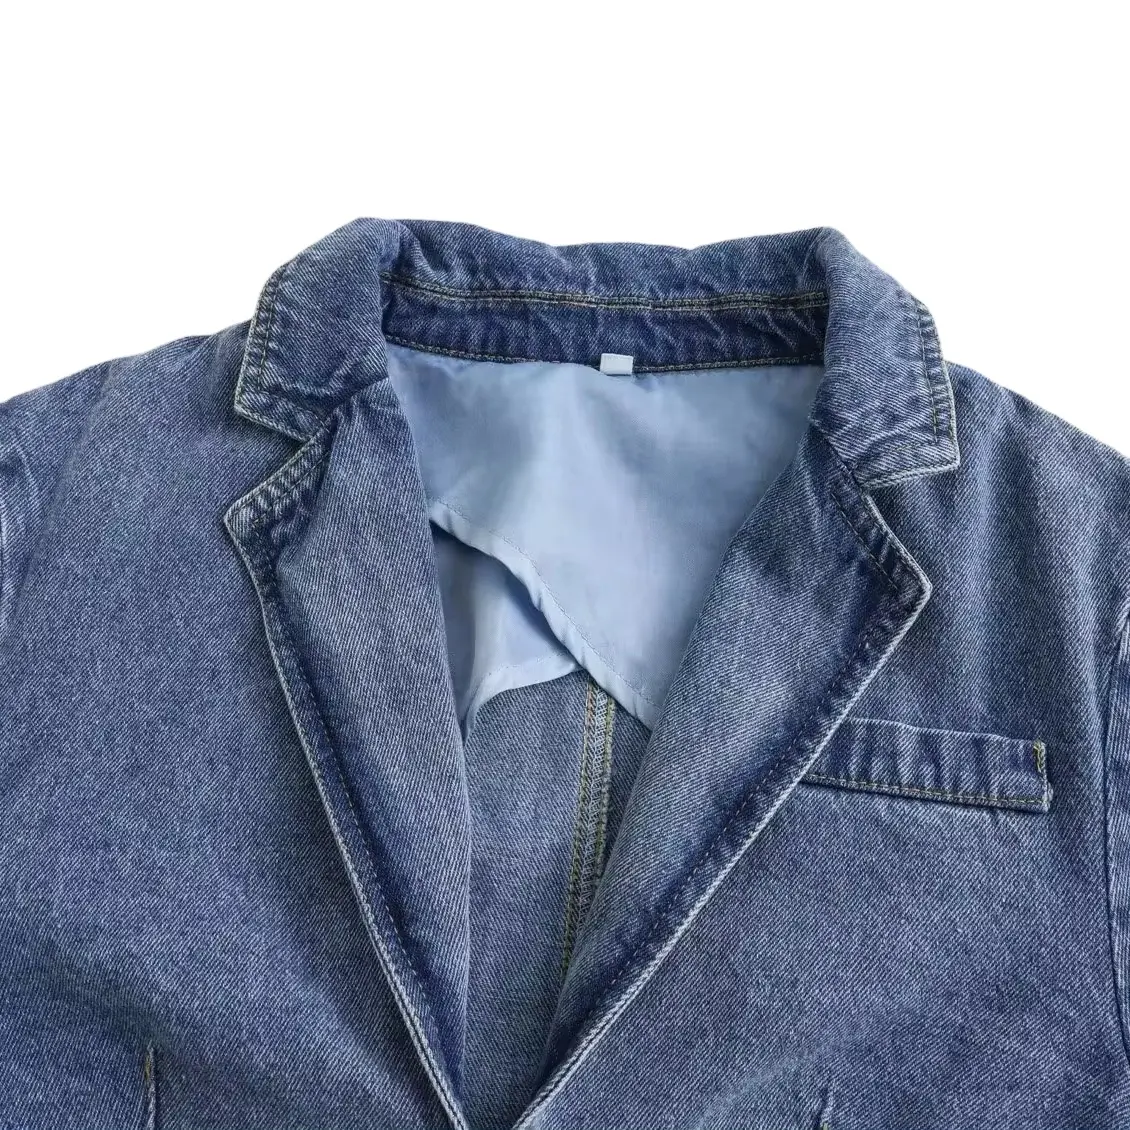 OEM/ODM personnalisation col rabattu manches longues denim bleu couleur bas gland mode décontractée jean veste courte pour les femmes